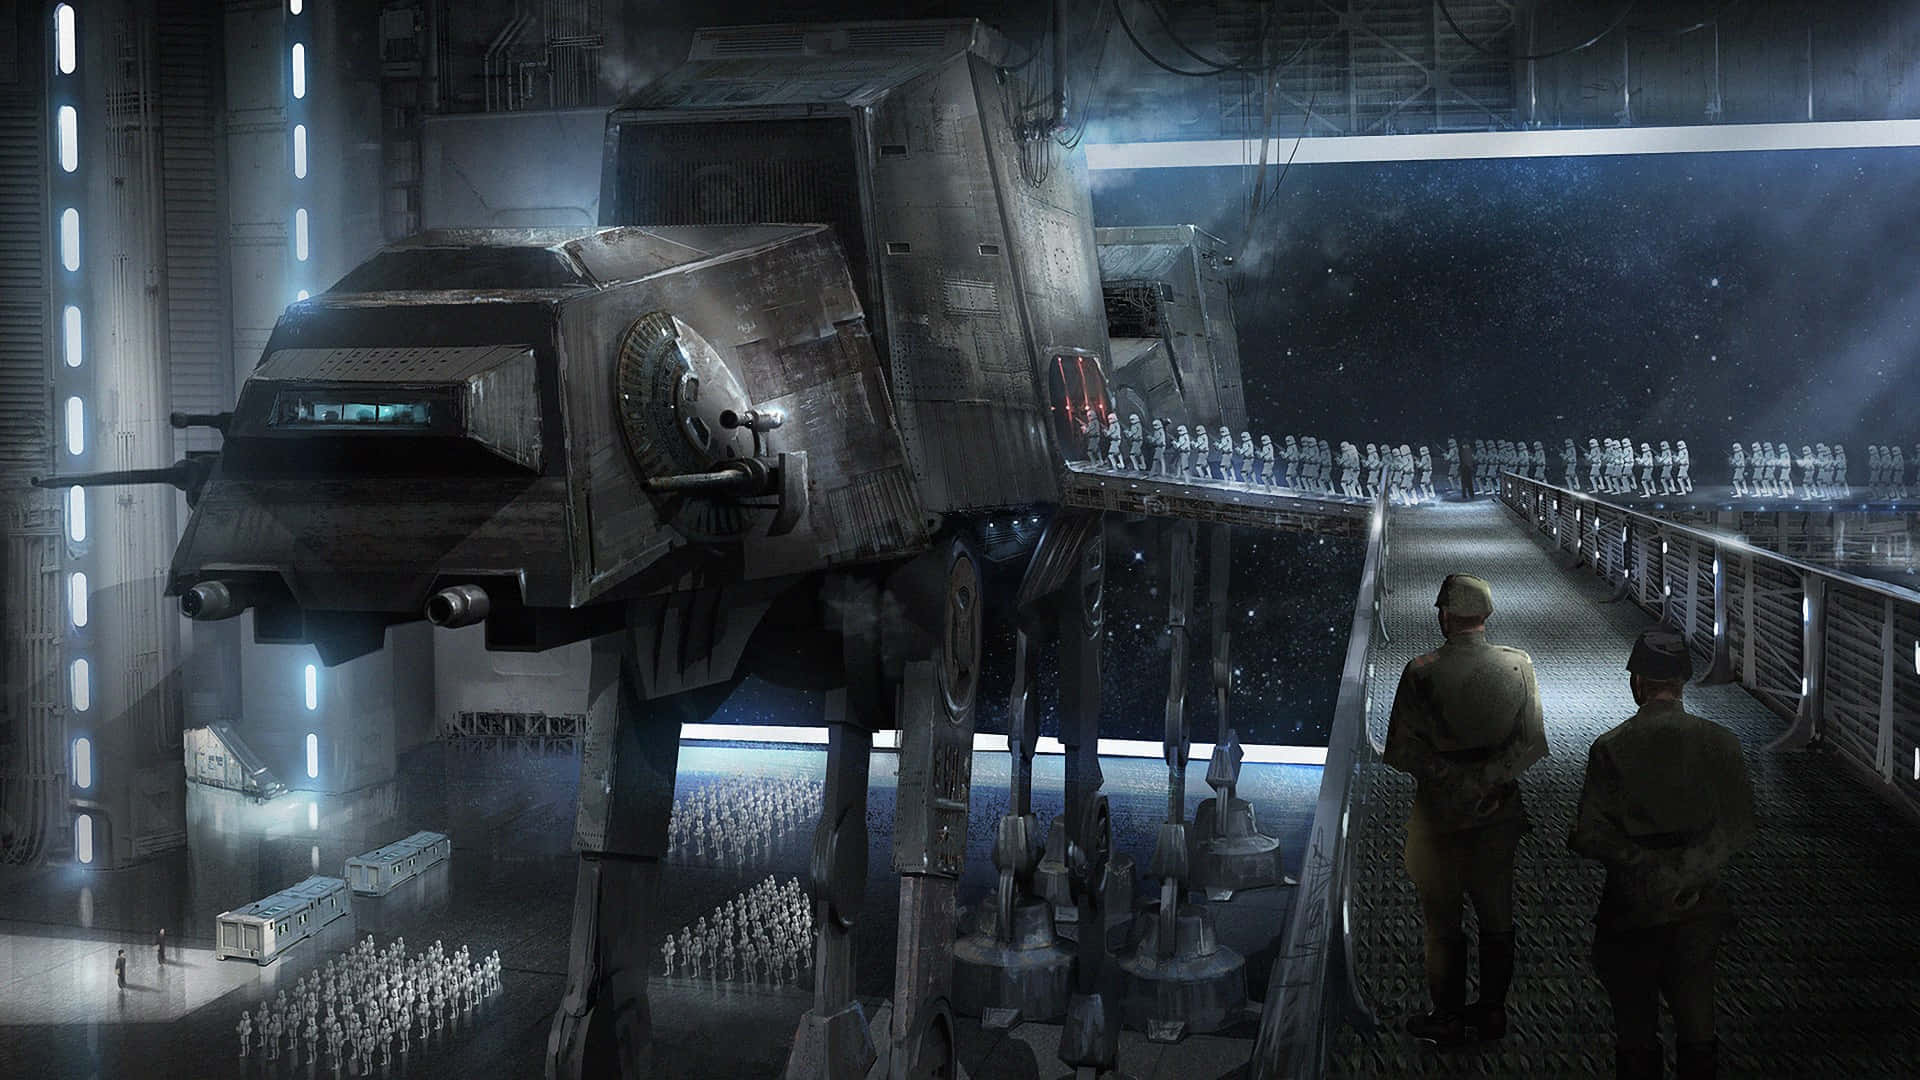 Unhermoso Panorama De La Ciudad De Jedha En El Universo De Star Wars. Fondo de pantalla